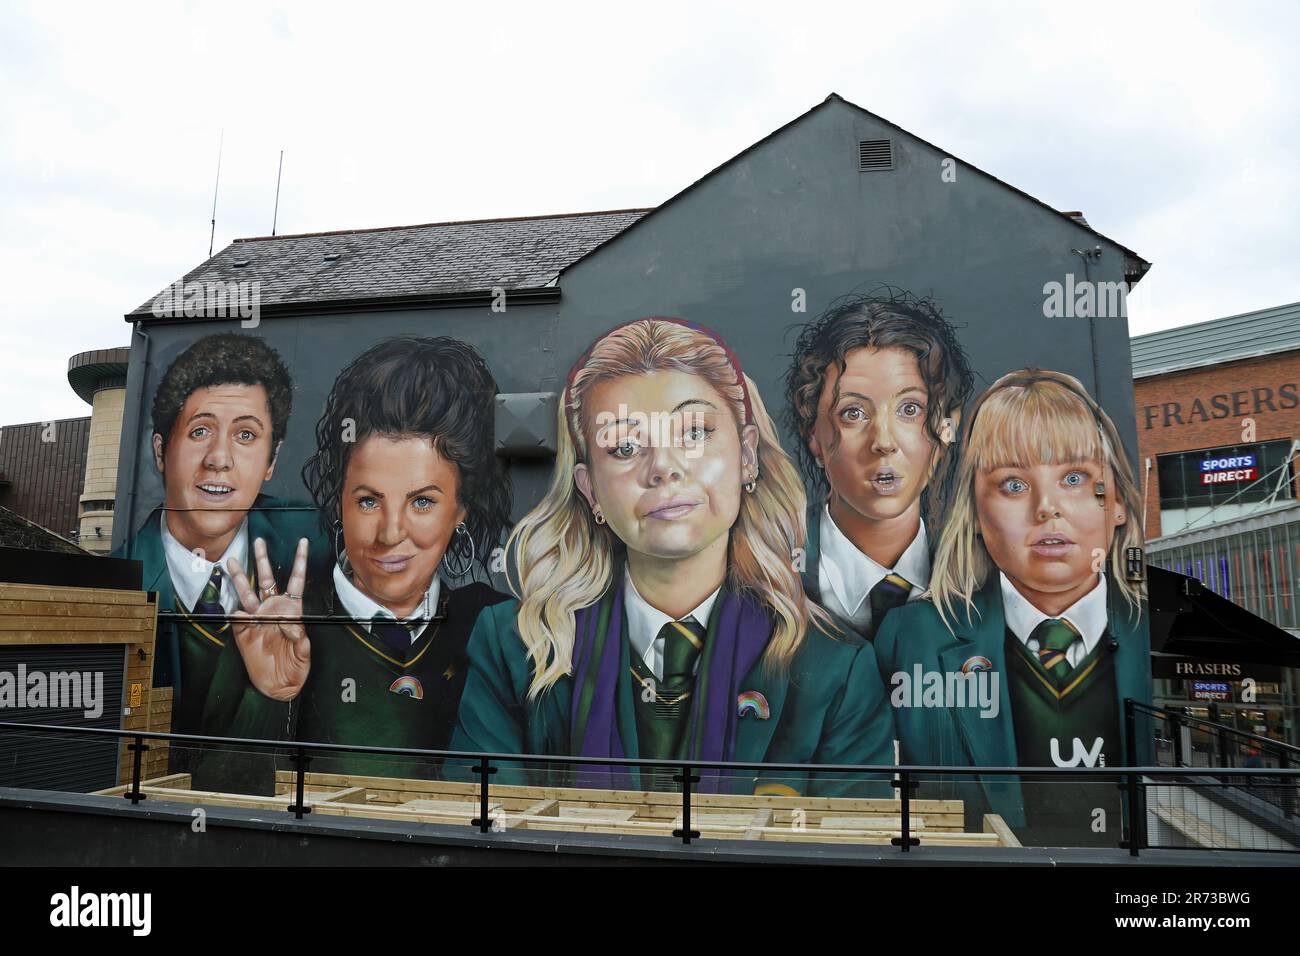 Derry Girls artwork in Northern Ireland Stock Photo